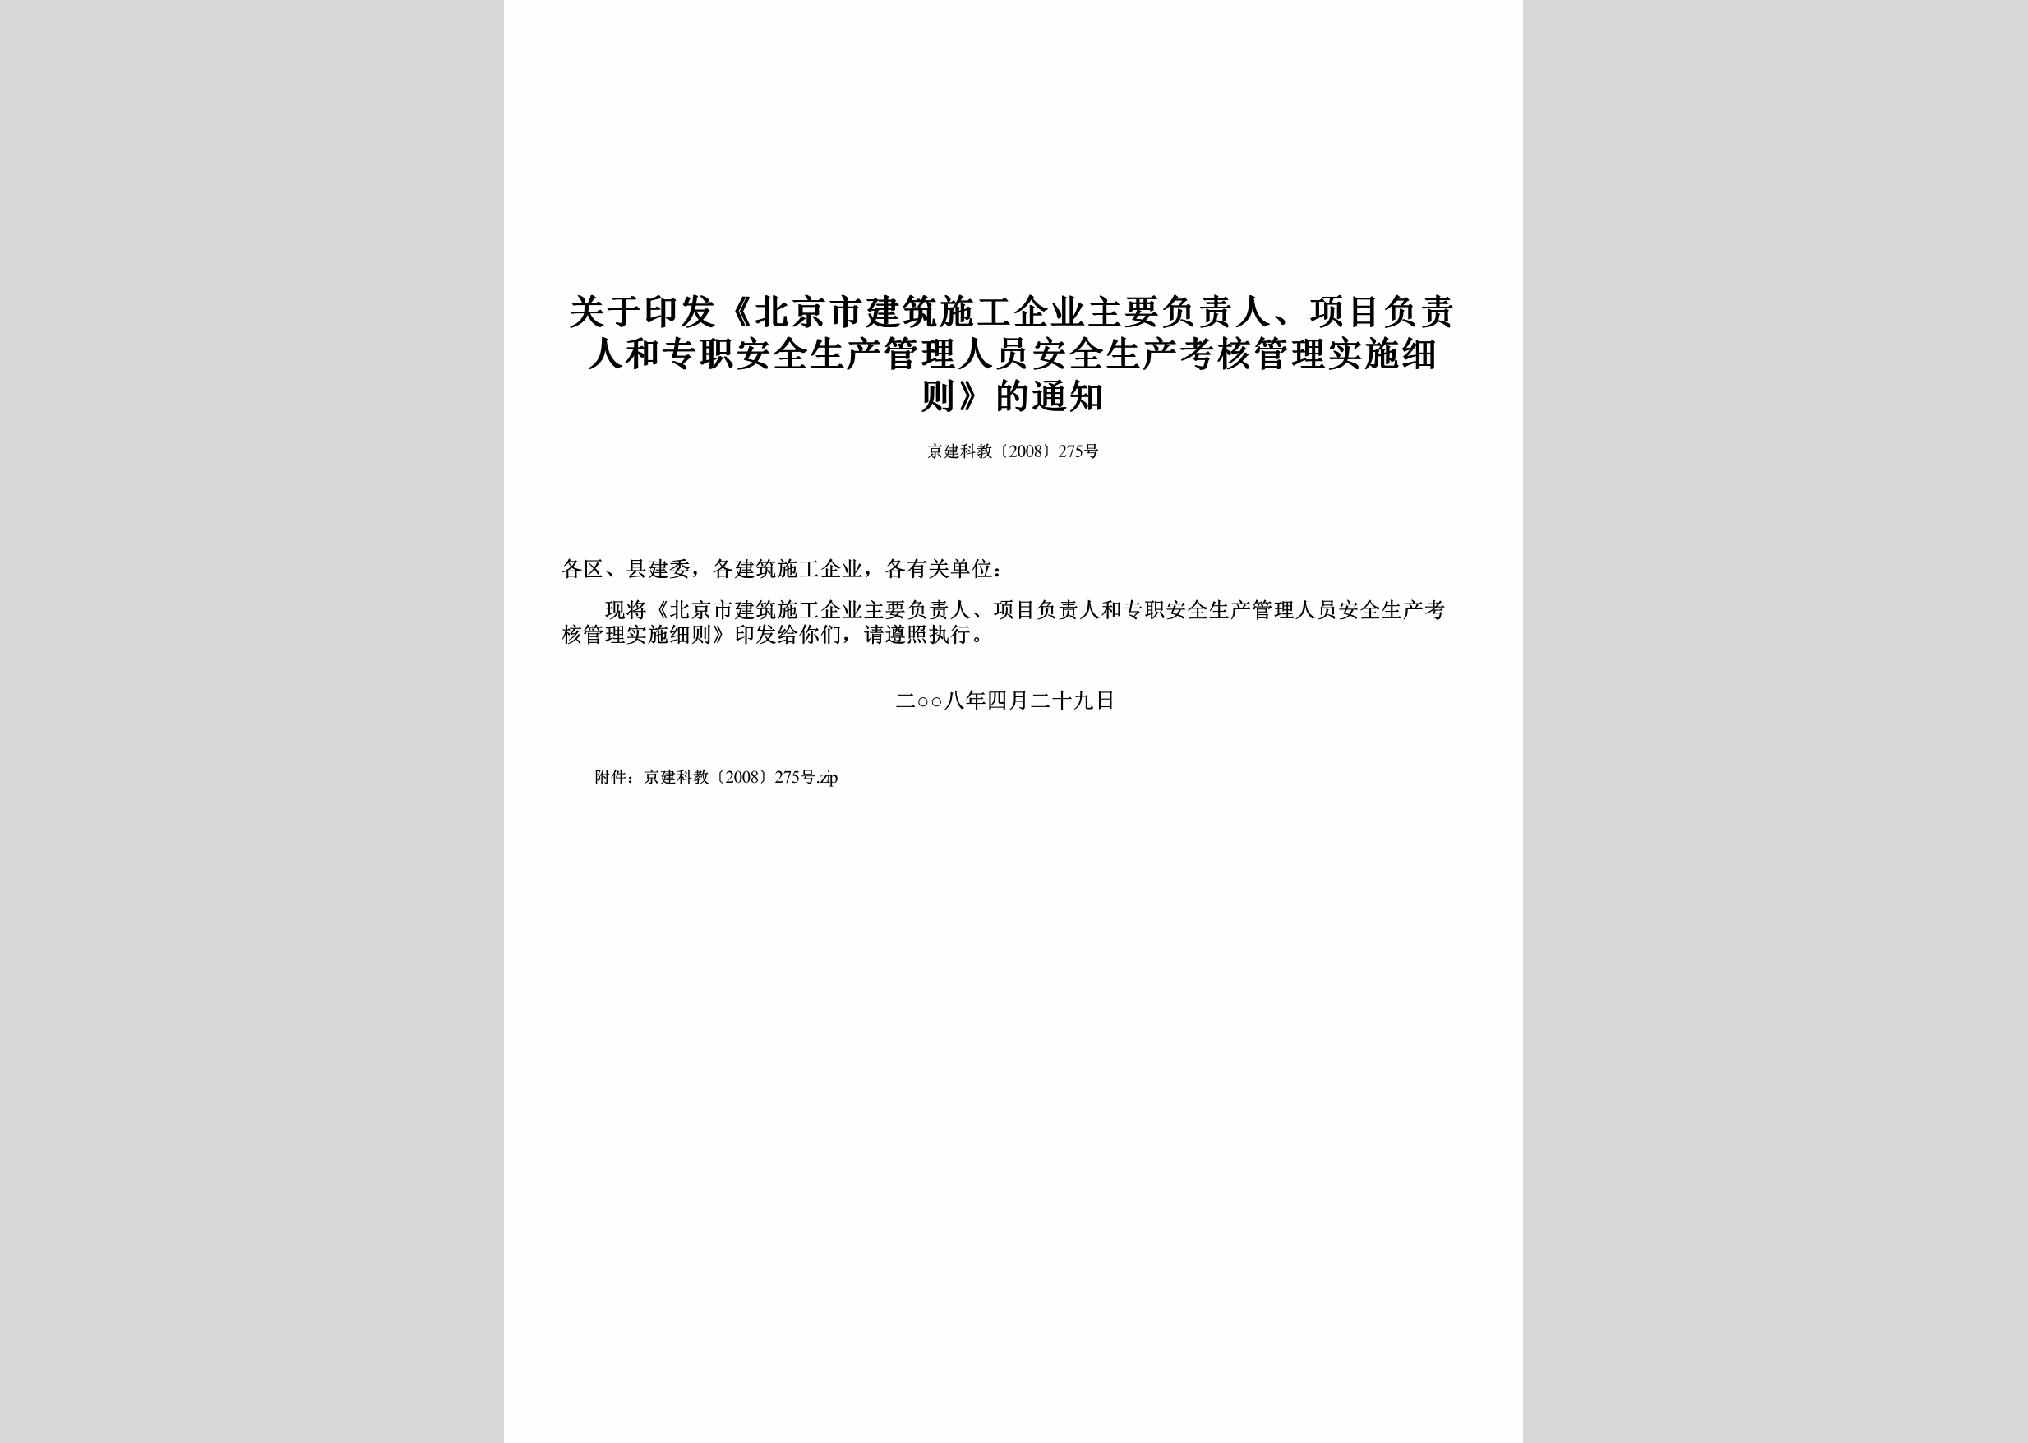 京建科教[2008]275号：关于印发《北京市建筑施工企业主要负责人、项目负责人和专职安全生产管理人员安全生产考核管理实施细则》的通知